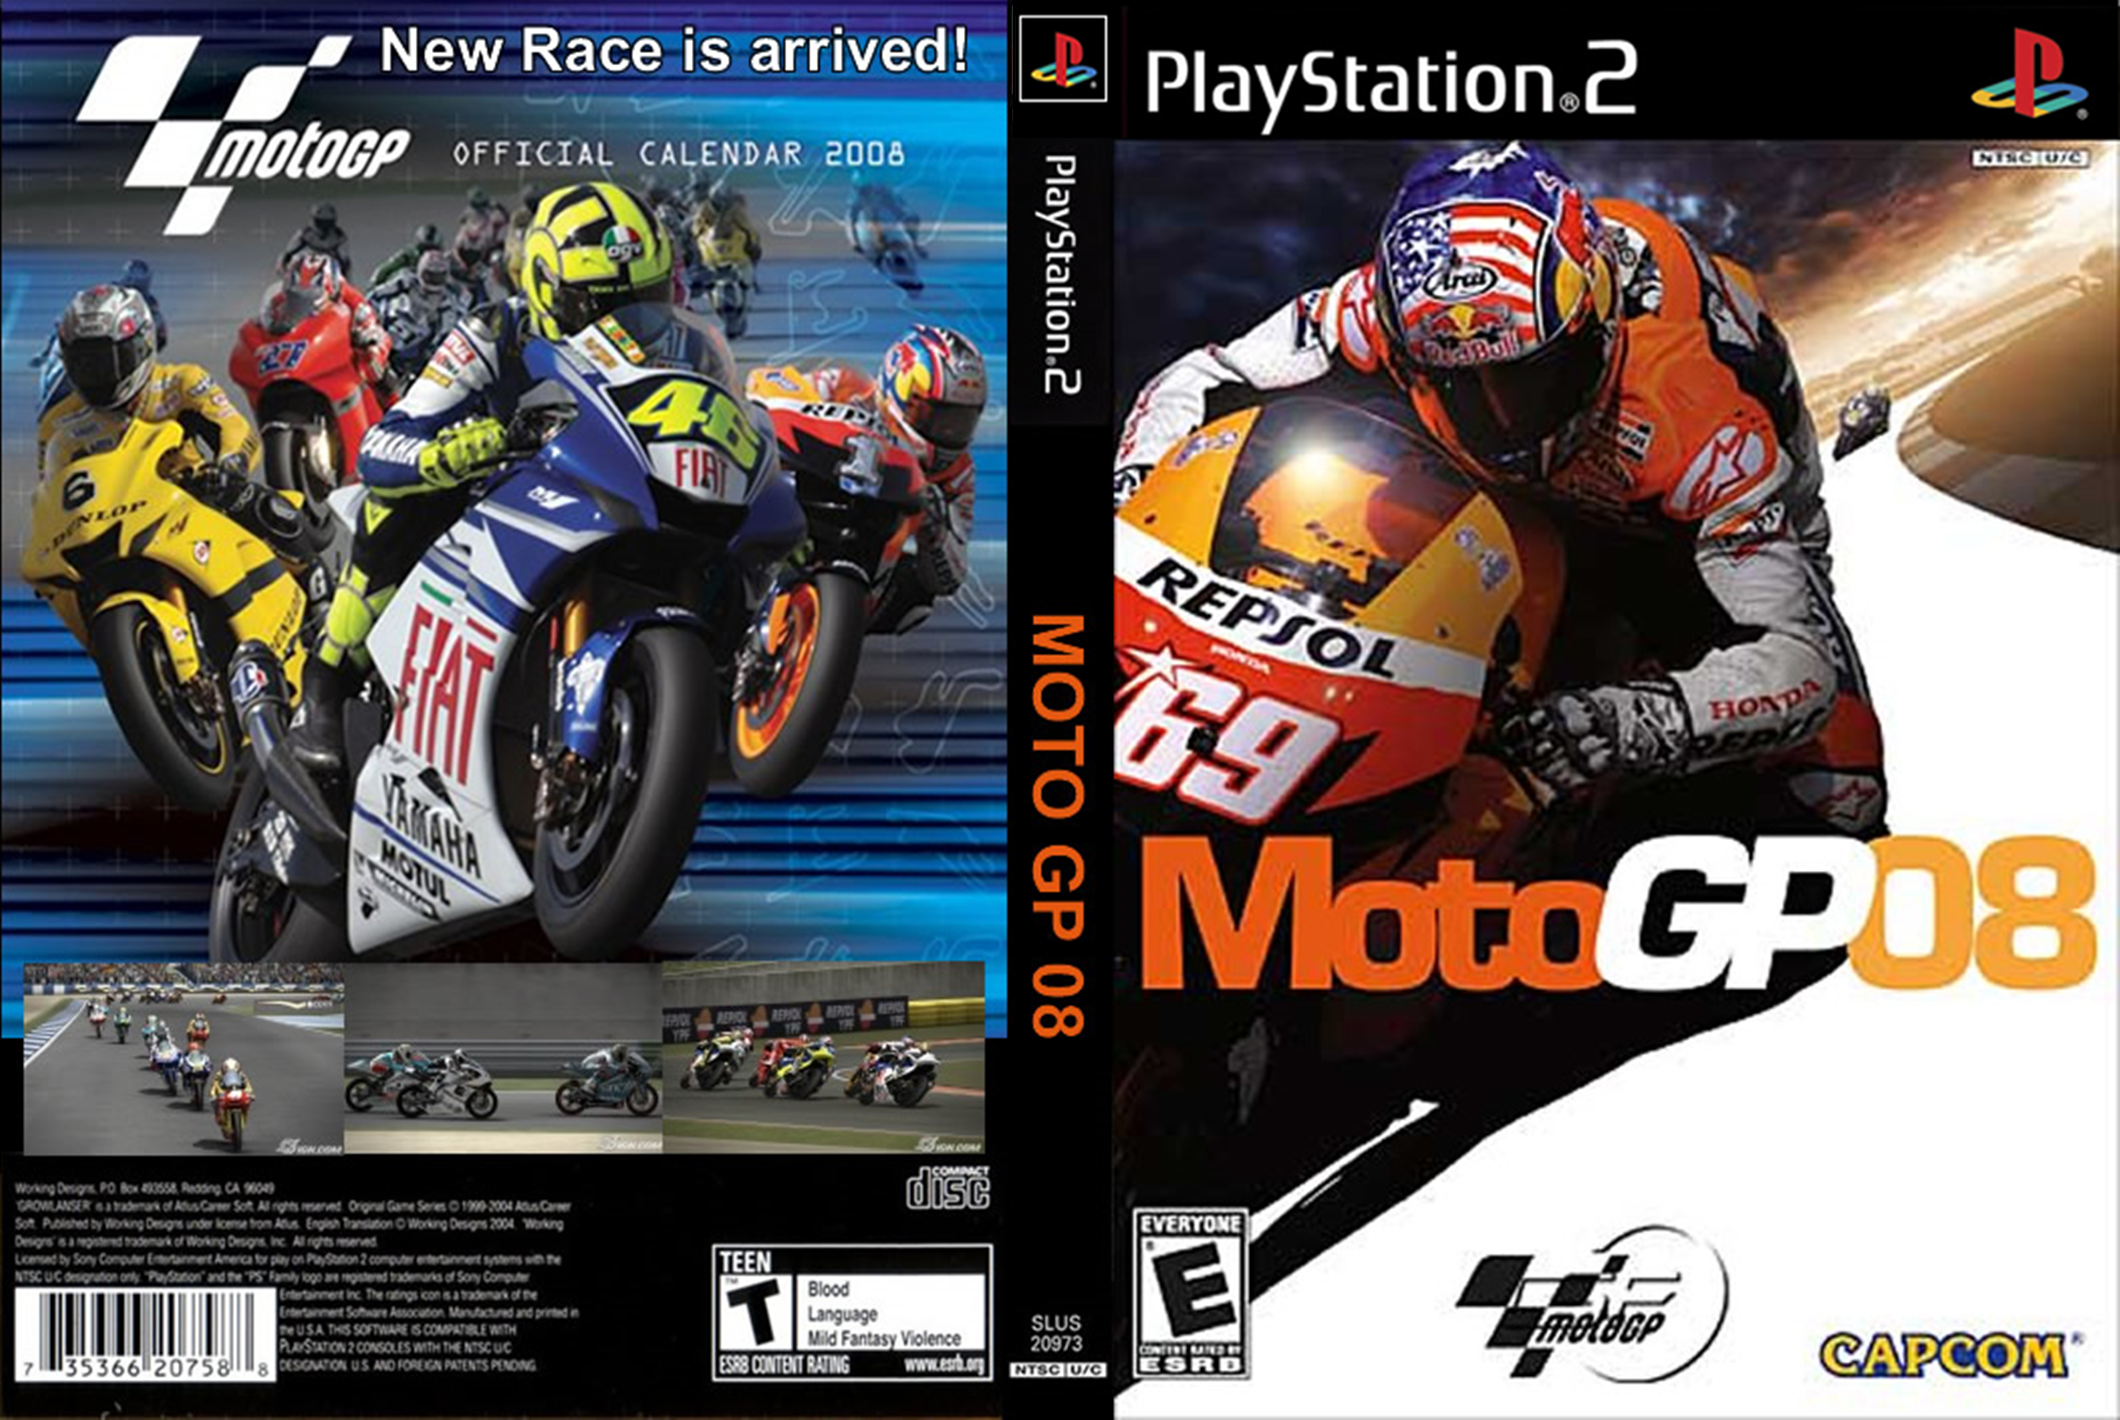 Moto GP 08 PS2 - Compra jogos online na